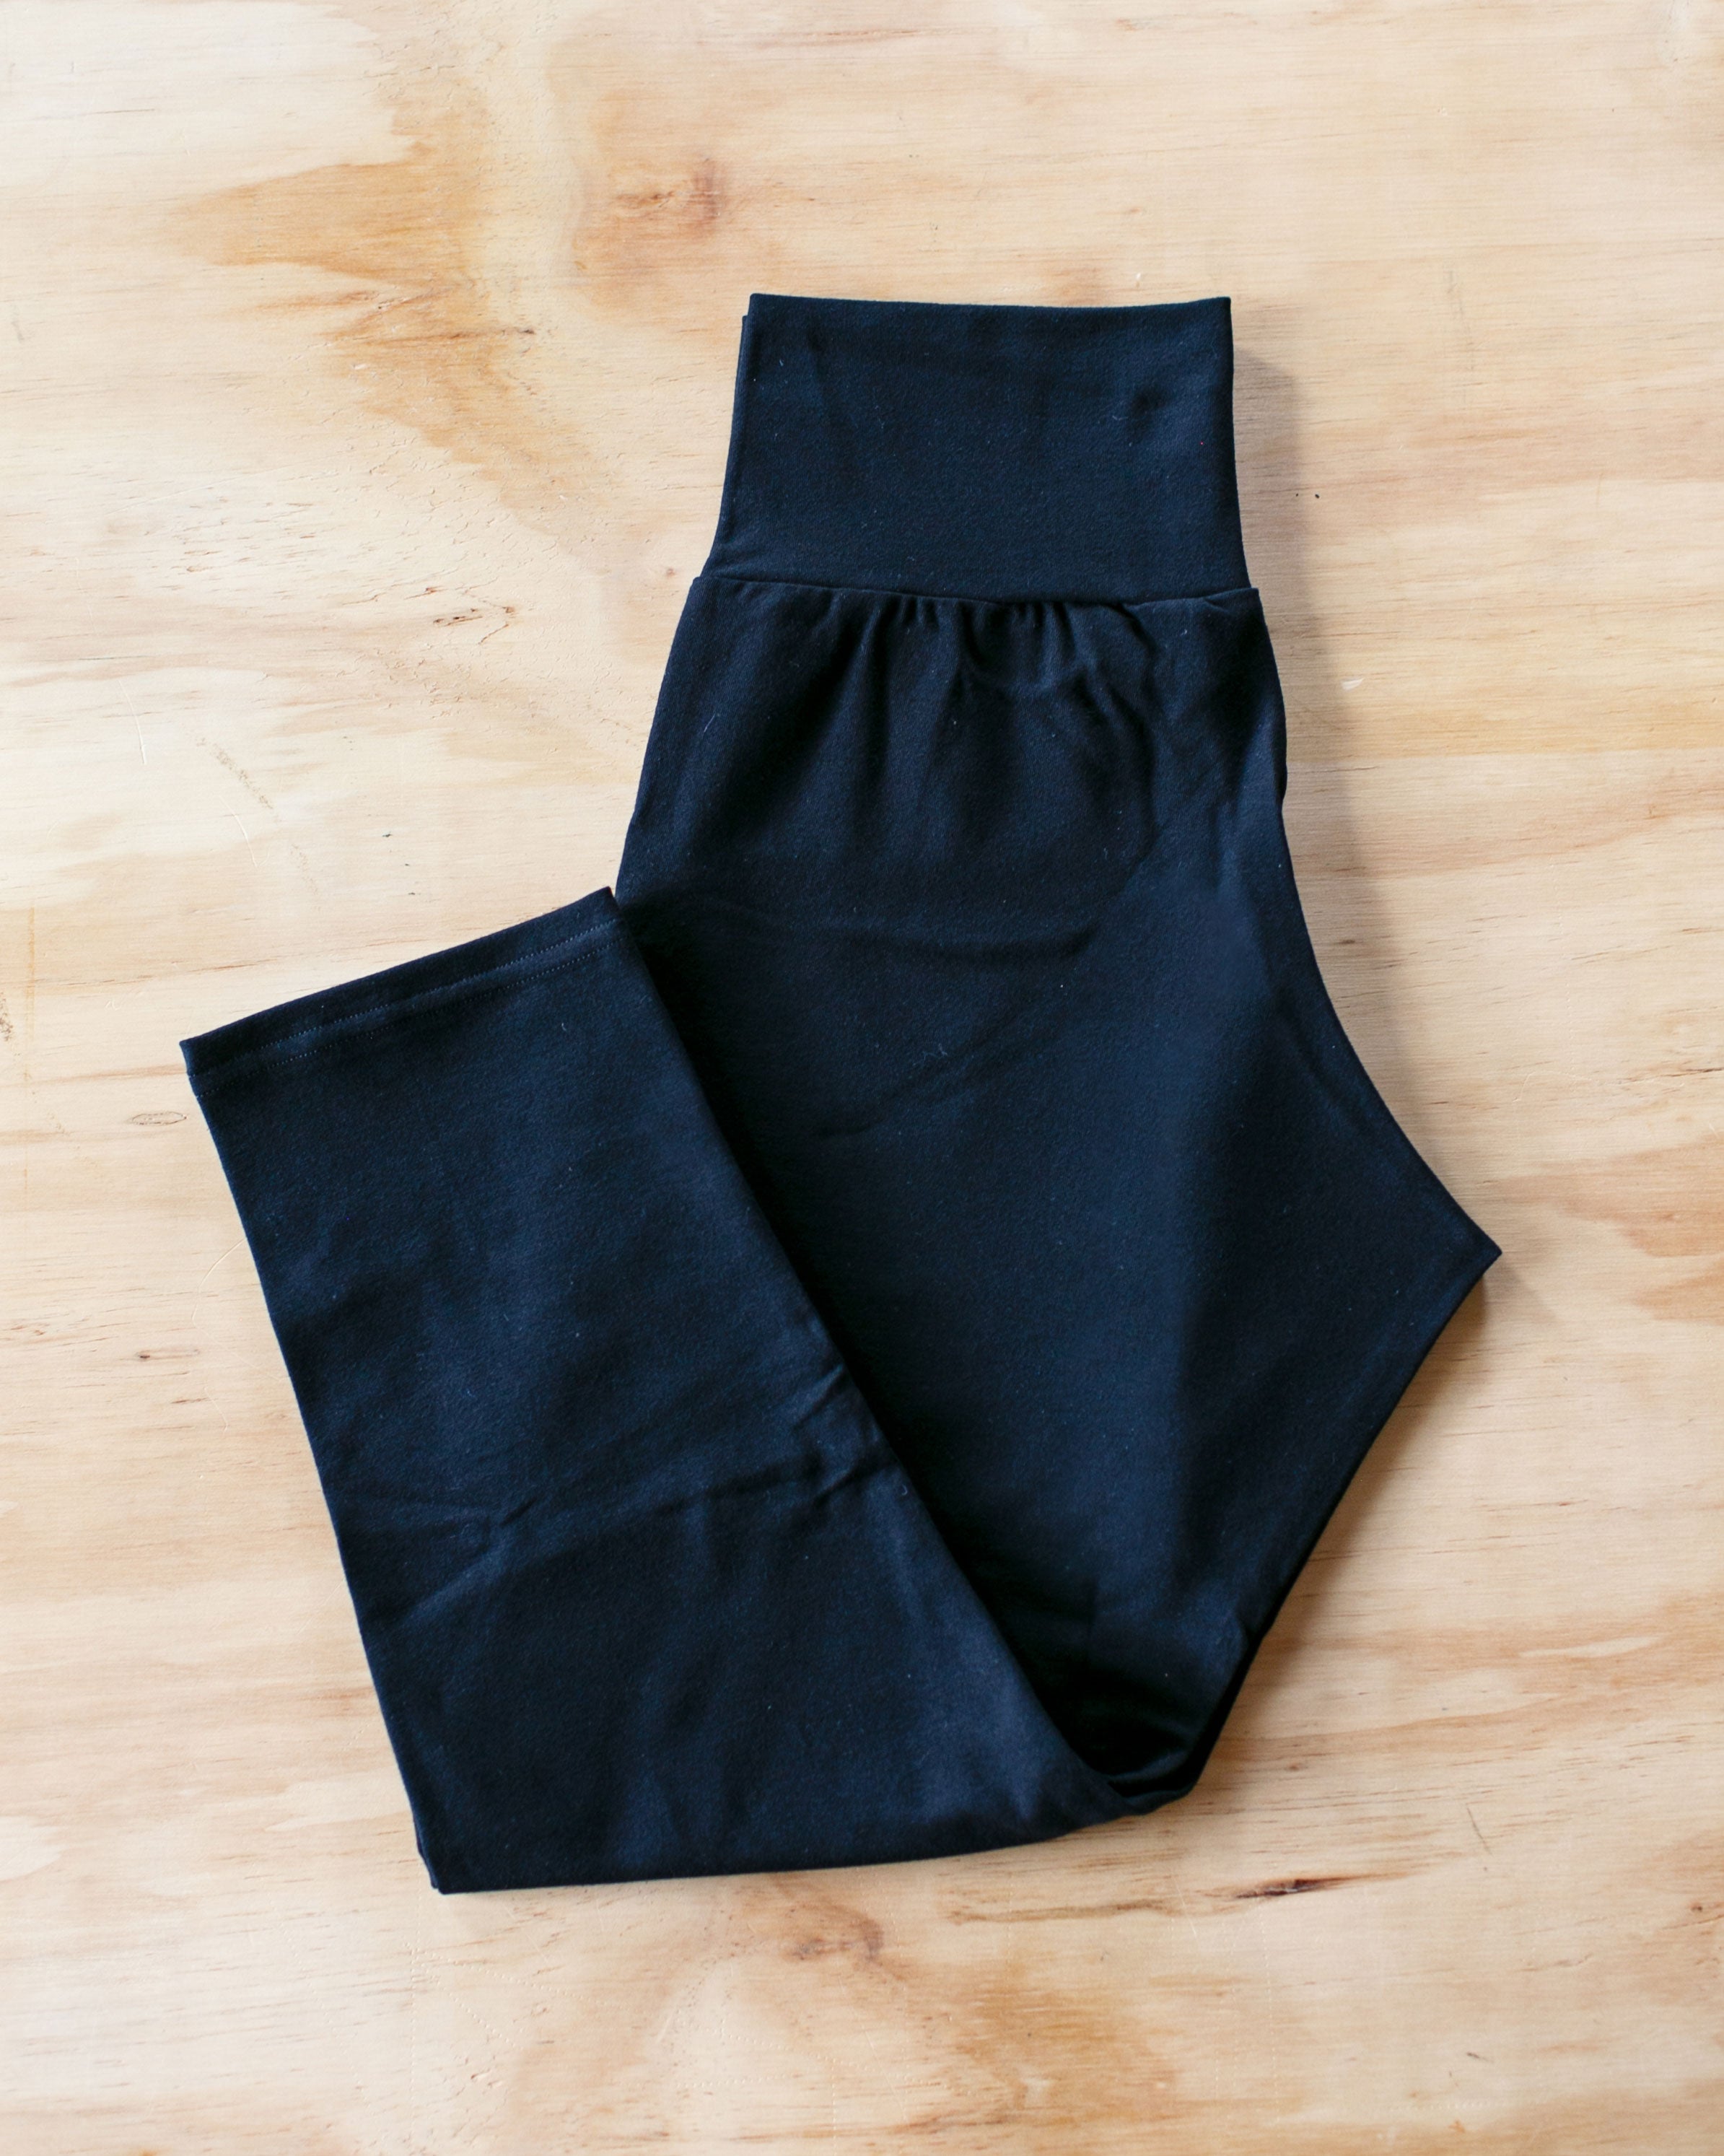 SKINY leggings 3/4 length in black